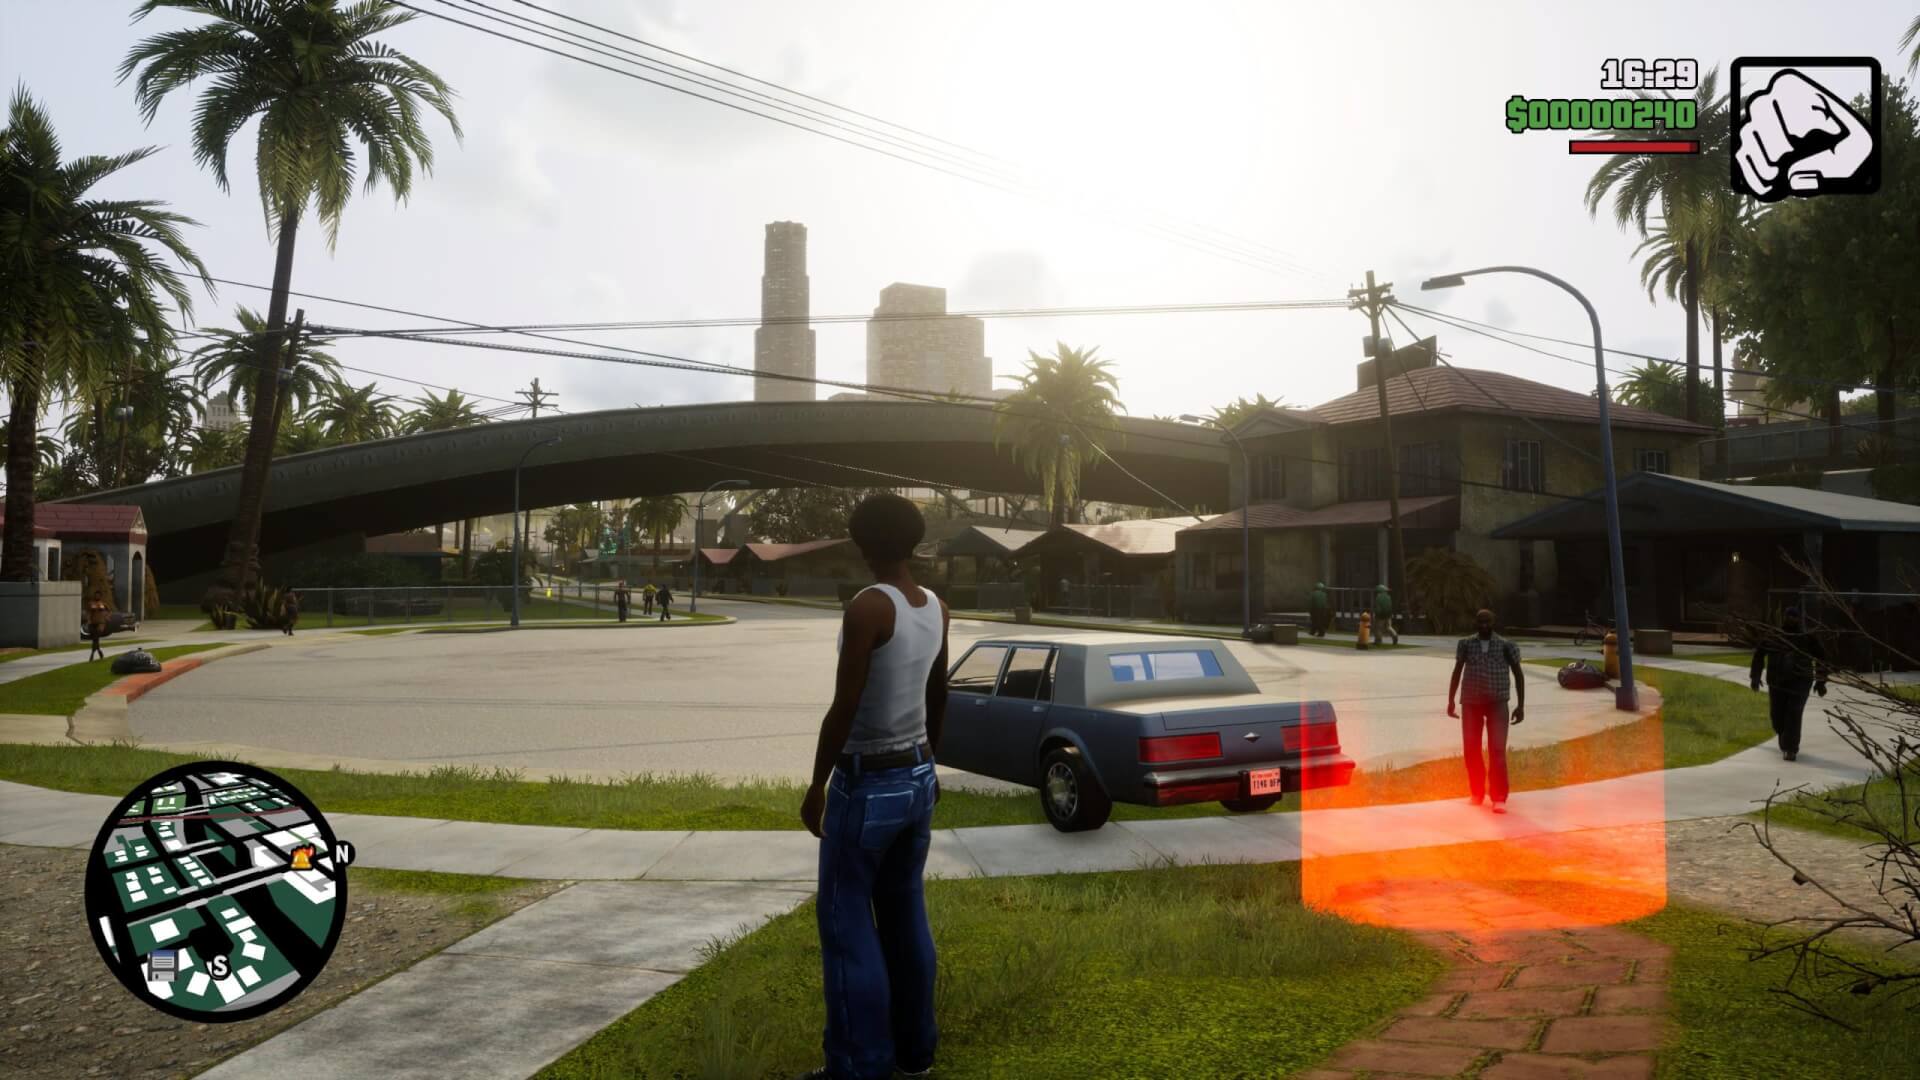 Grand Theft Auto San Andreas HD Remake Xbox 360 - Midia Fisica